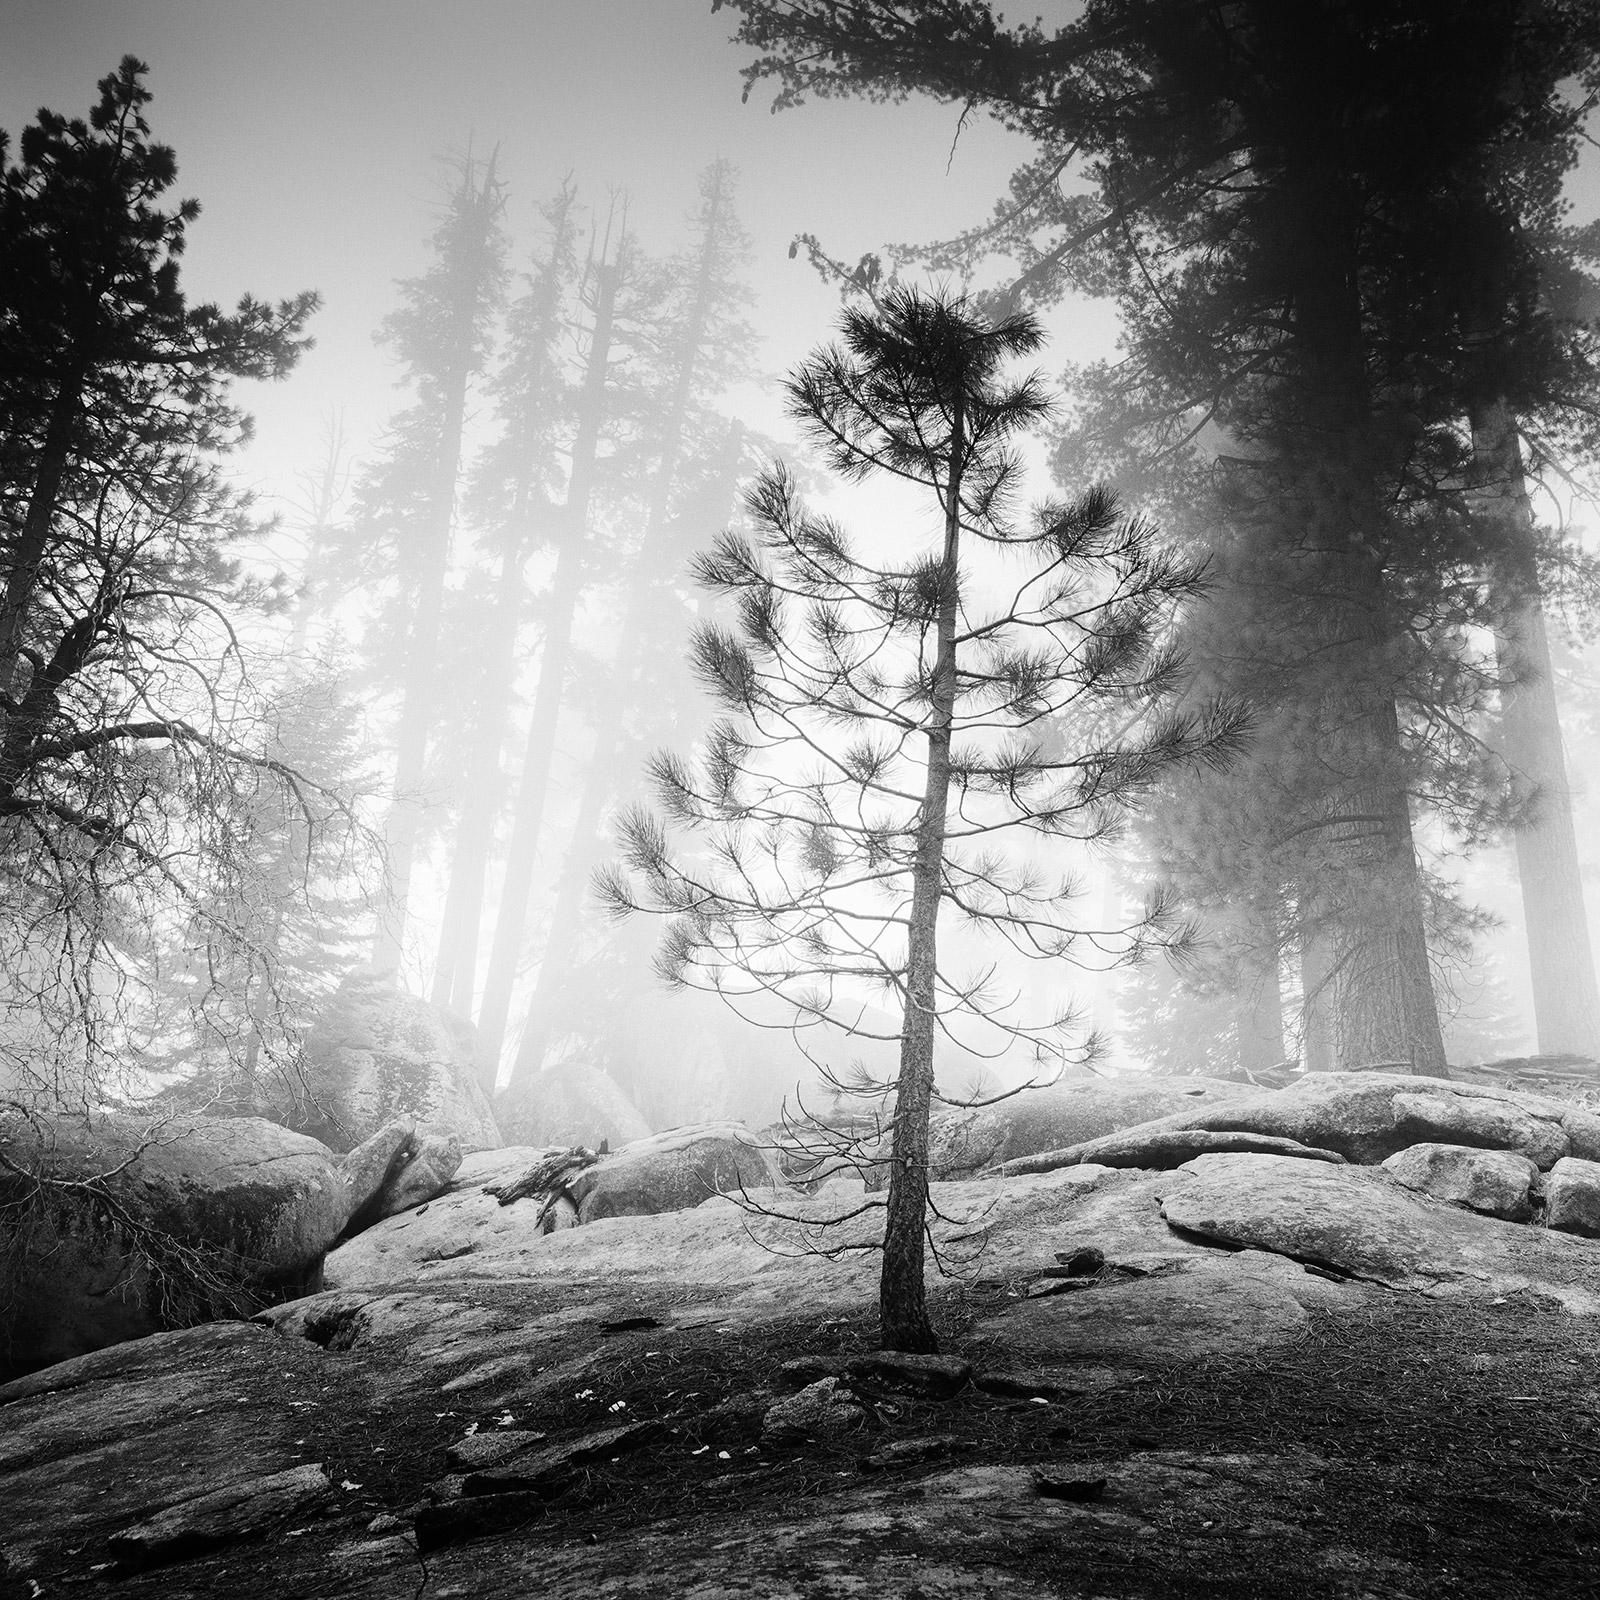 Into the Wild, Redwood, Nebel, Kalifornien, USA, b&w Art Landschaftsfotografie